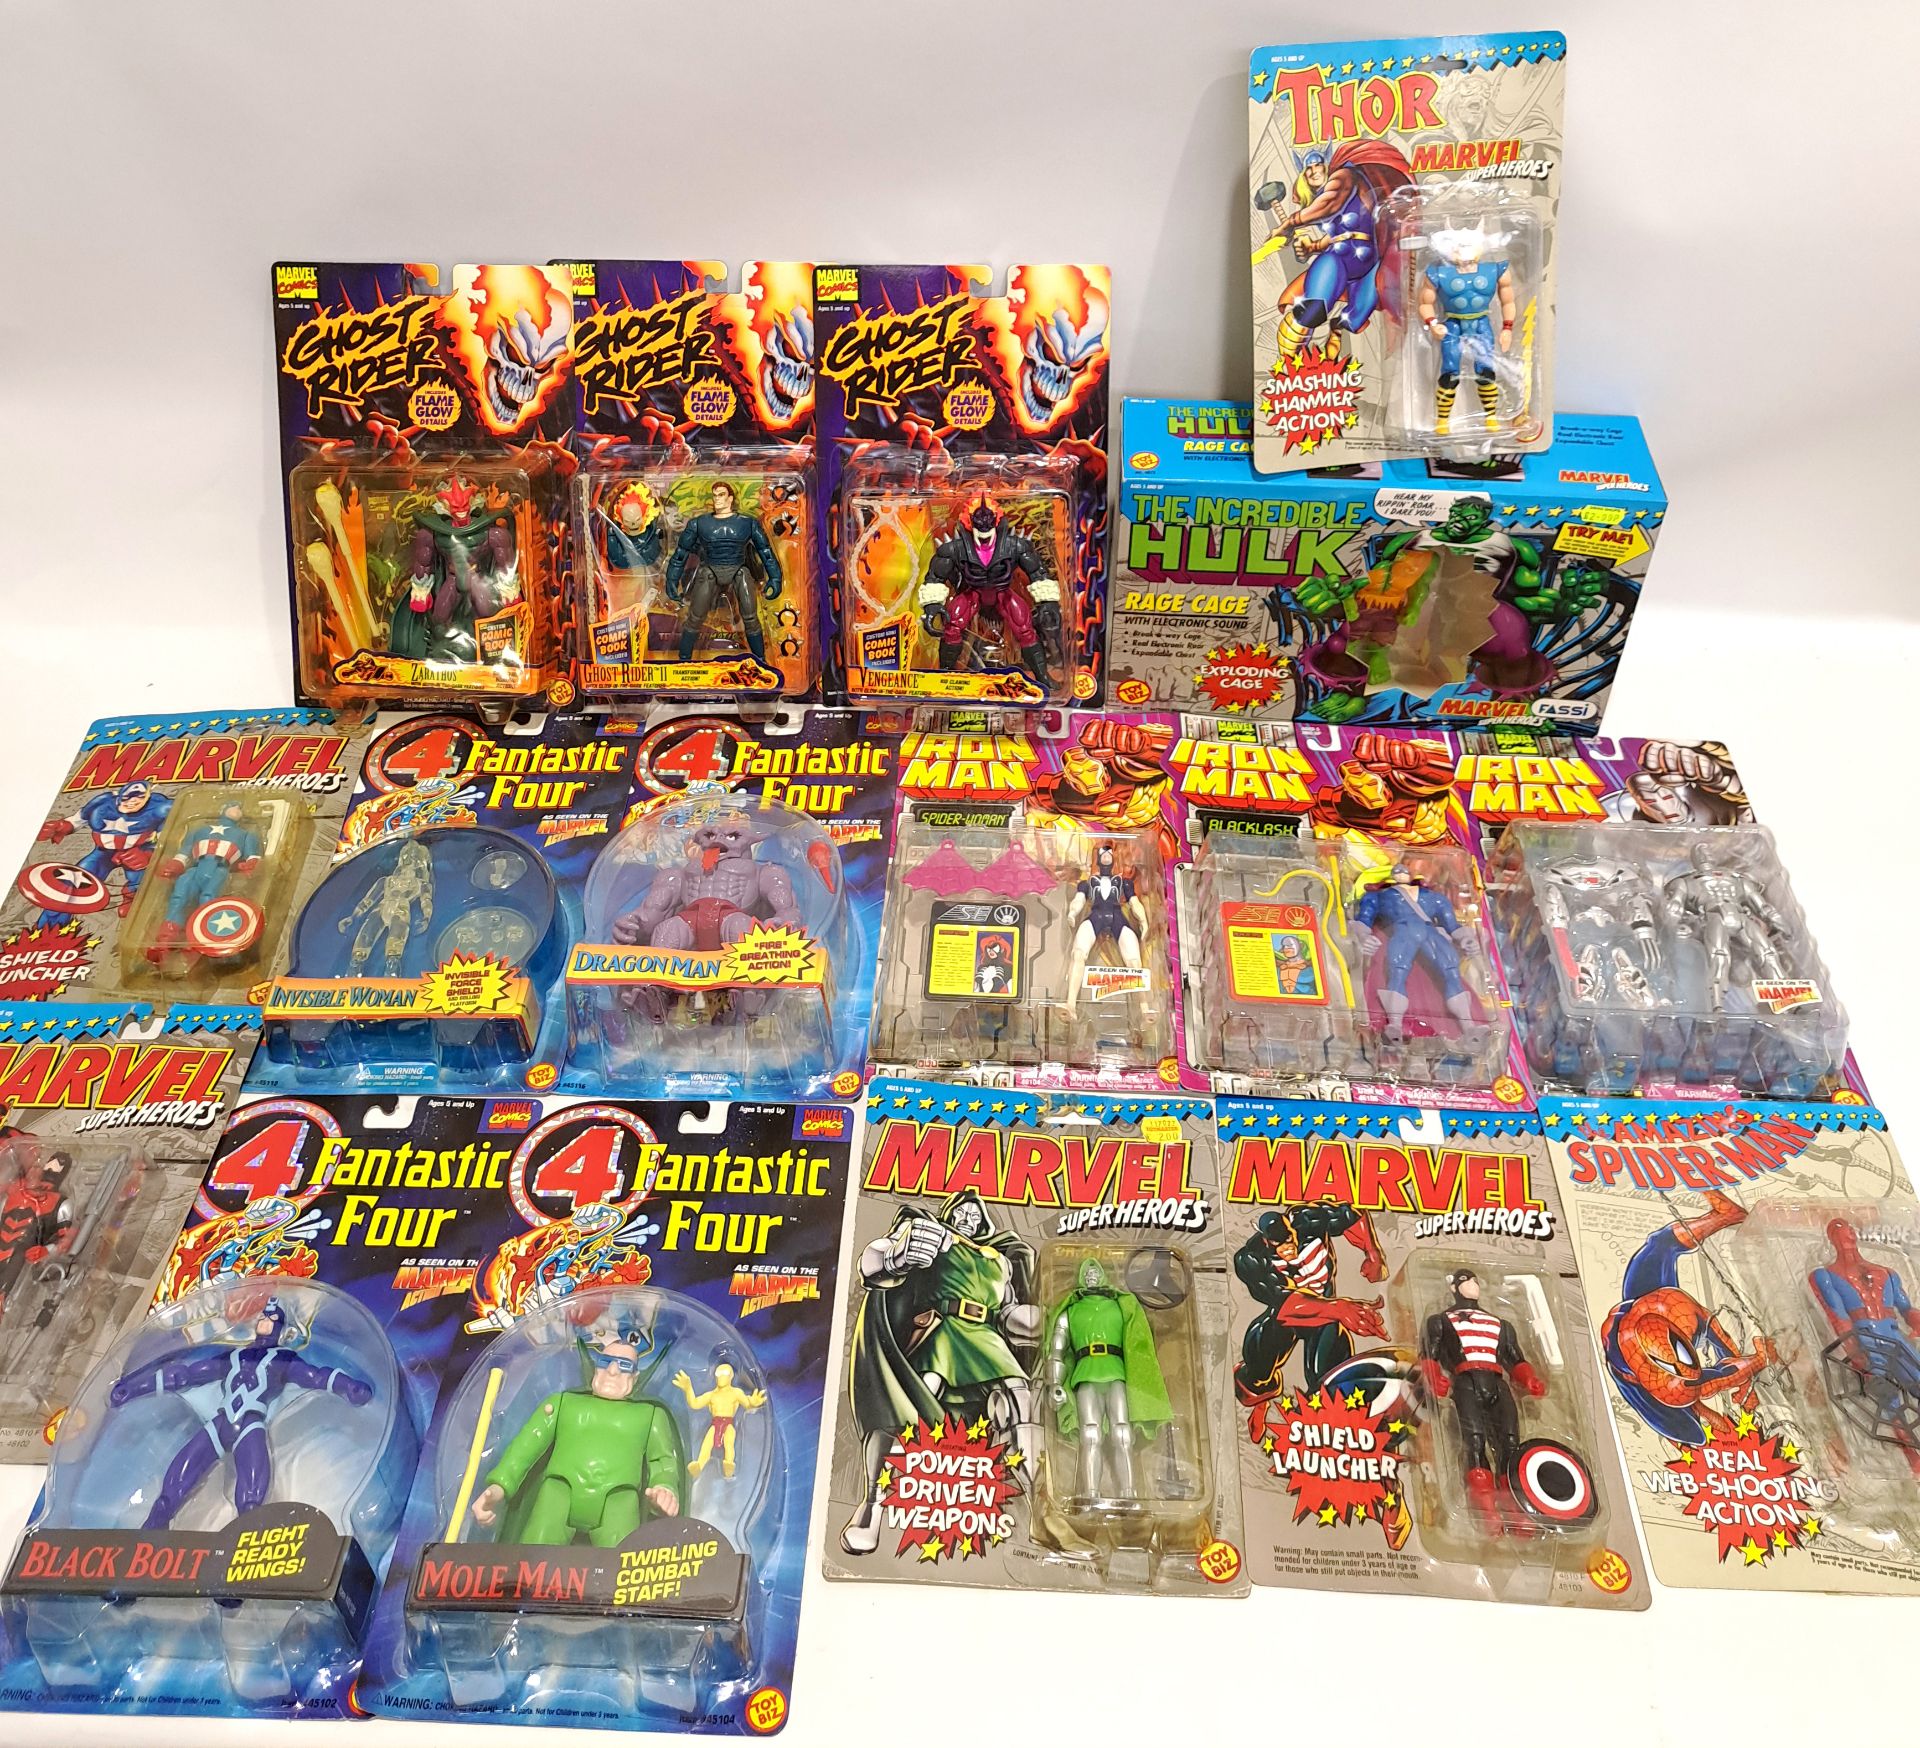 Quantity of Toy Biz Marvel Comics Action Figures